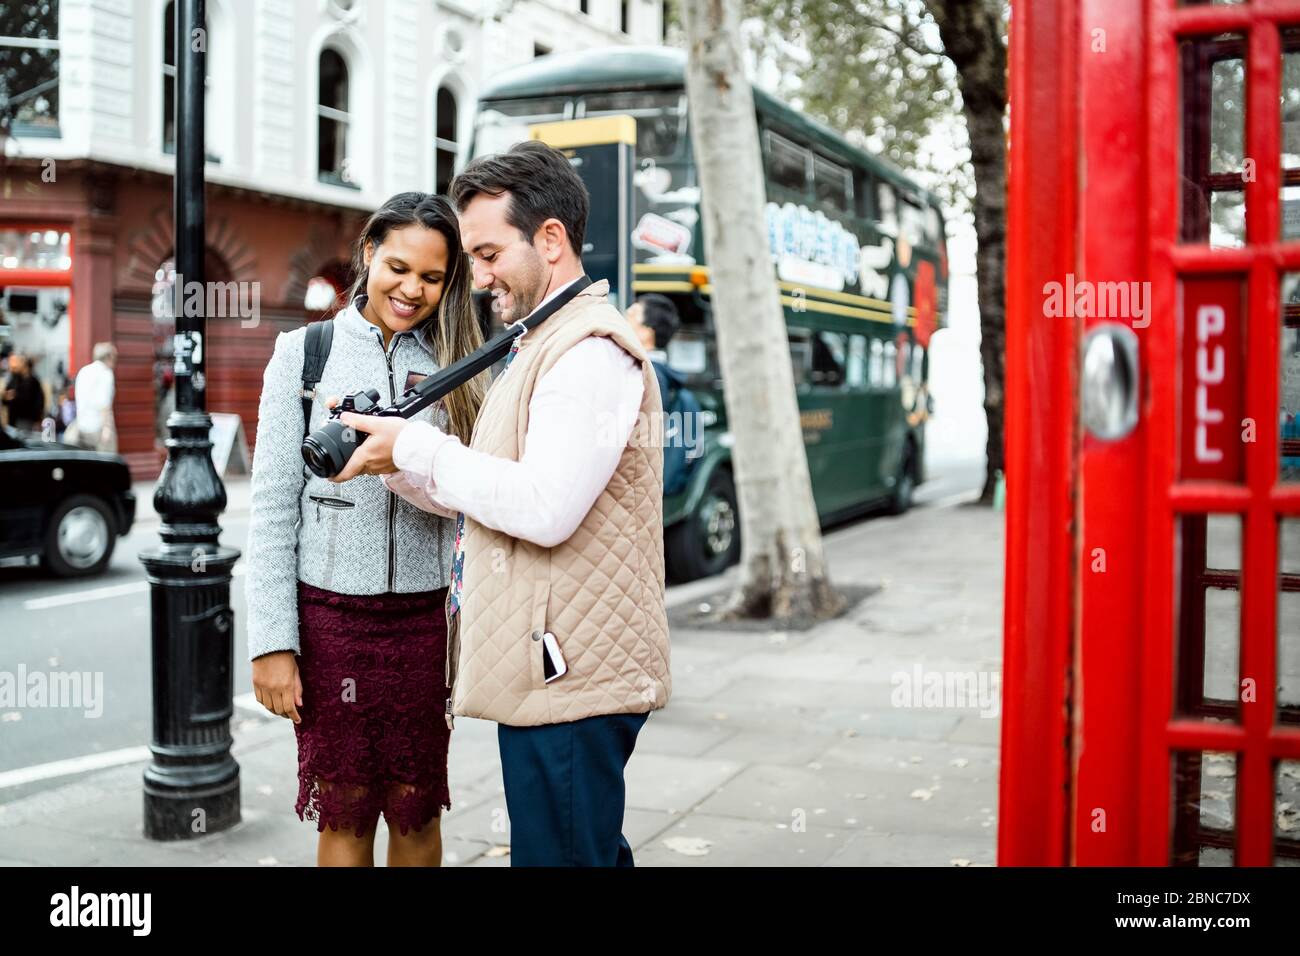 Glücklich Reisen Paar Überprüfung Fotos auf ihrer Kamera in London, Großbritannien. Doppeldeckerbus und rote Telefonzelle in einem Rahmen Stockfoto